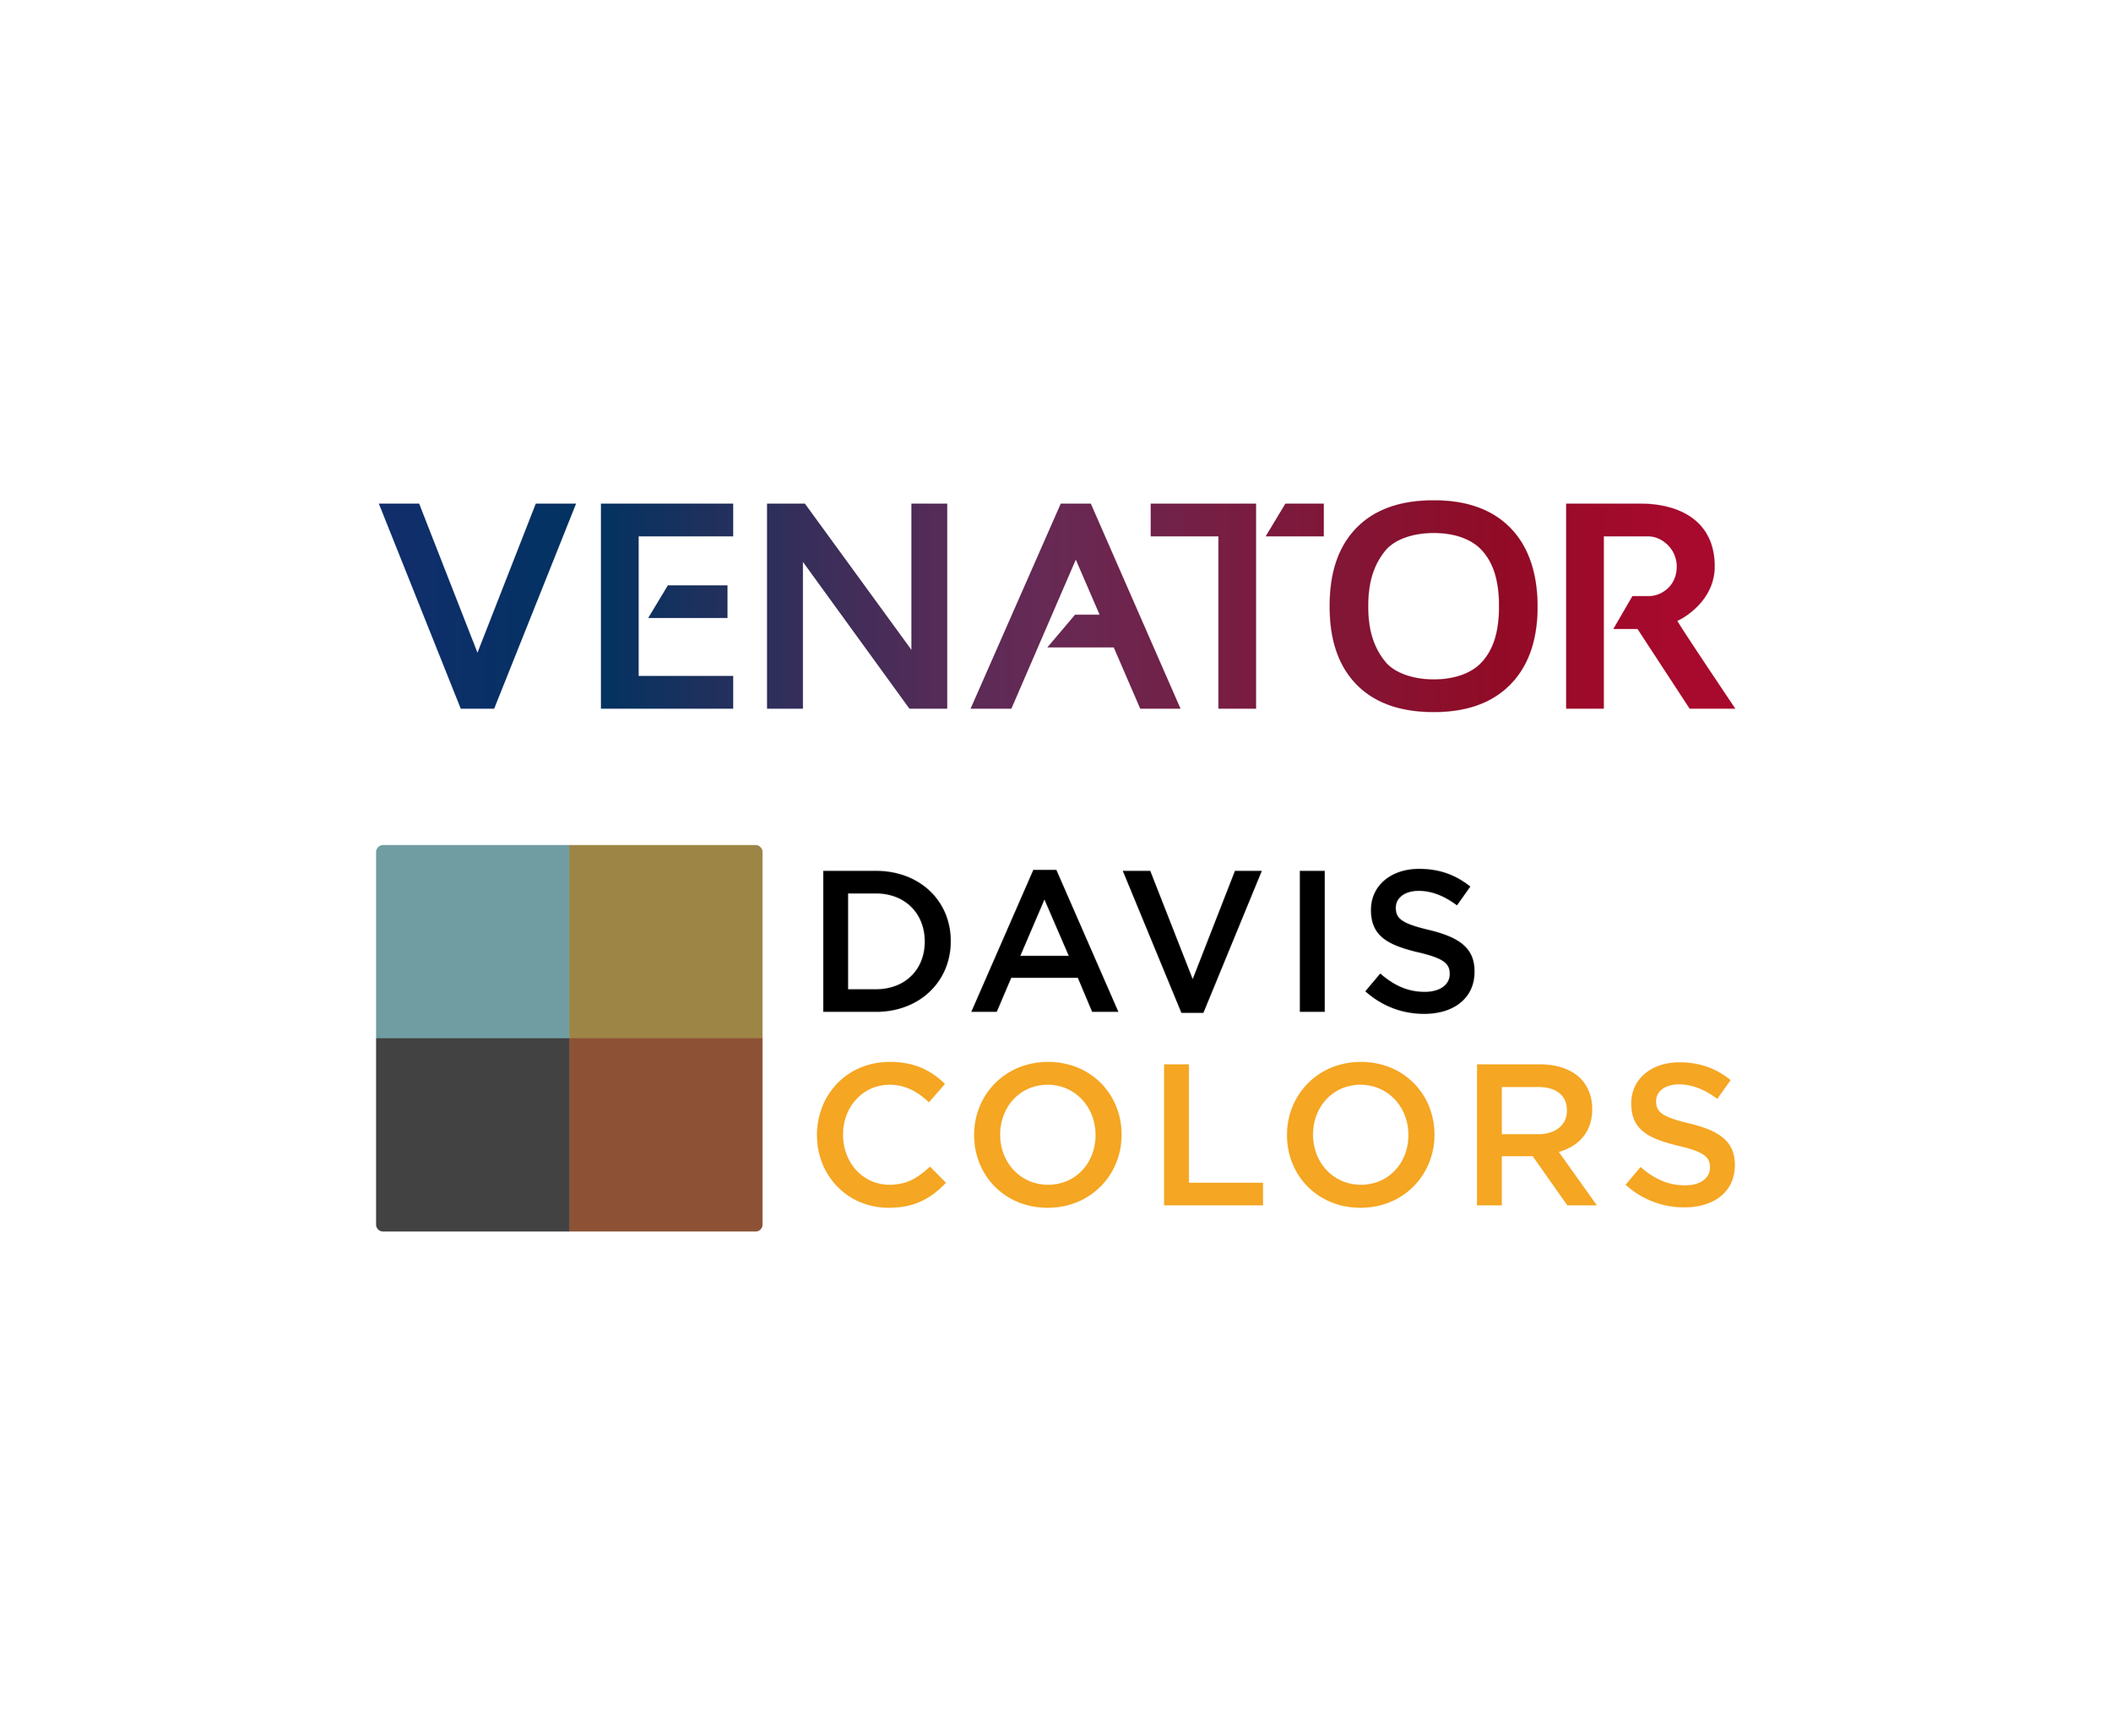 venator-davis-colors-logo-lockup-01.png